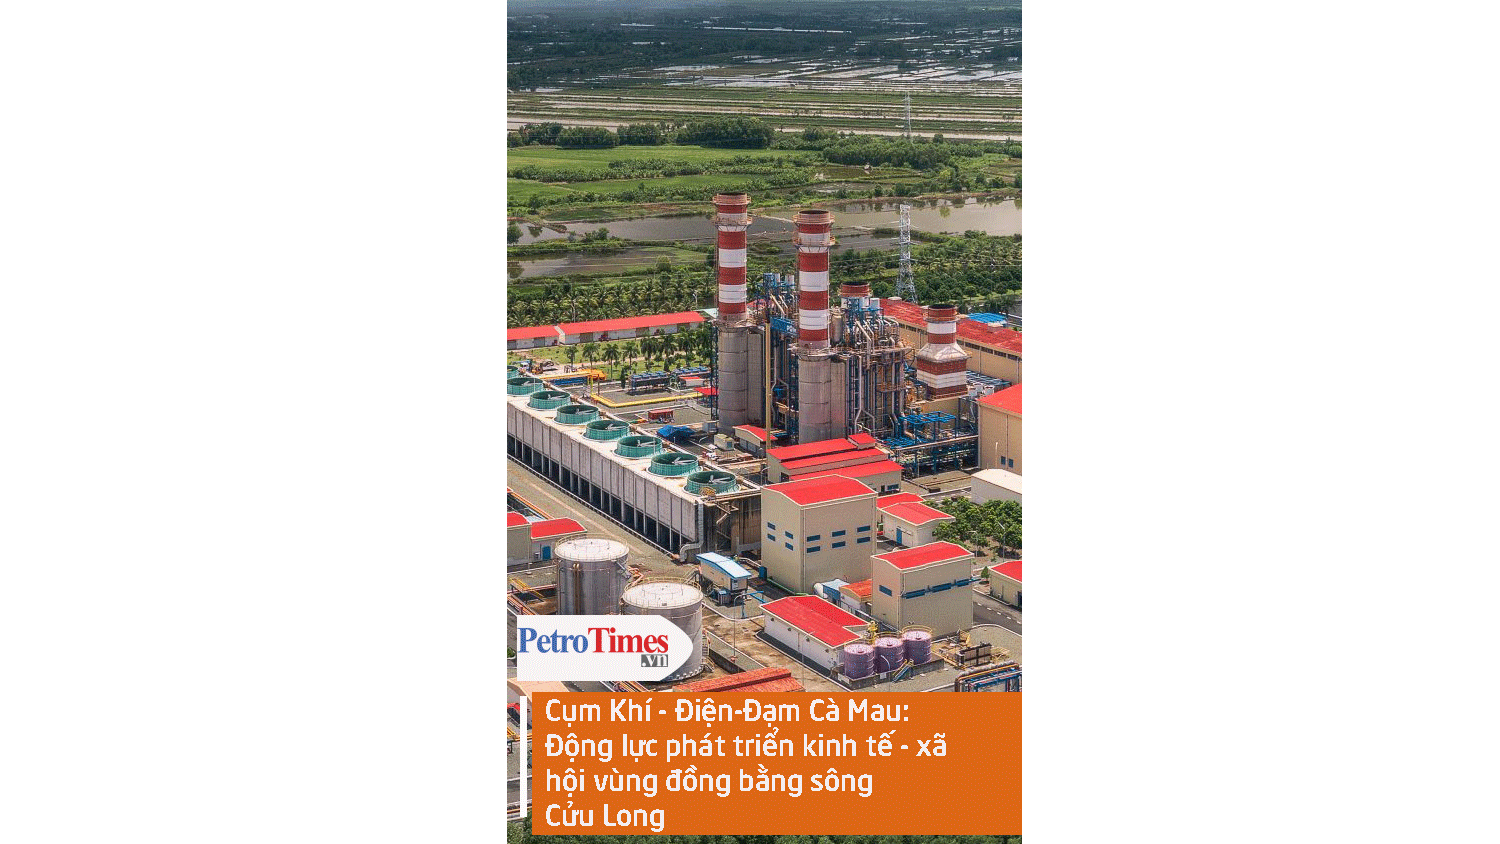 Cụm Khí - Điện - Đạm Cà Mau: Động lực phát triển kinh tế - xã hội vùng Đồng bằng Sông Cửu Long